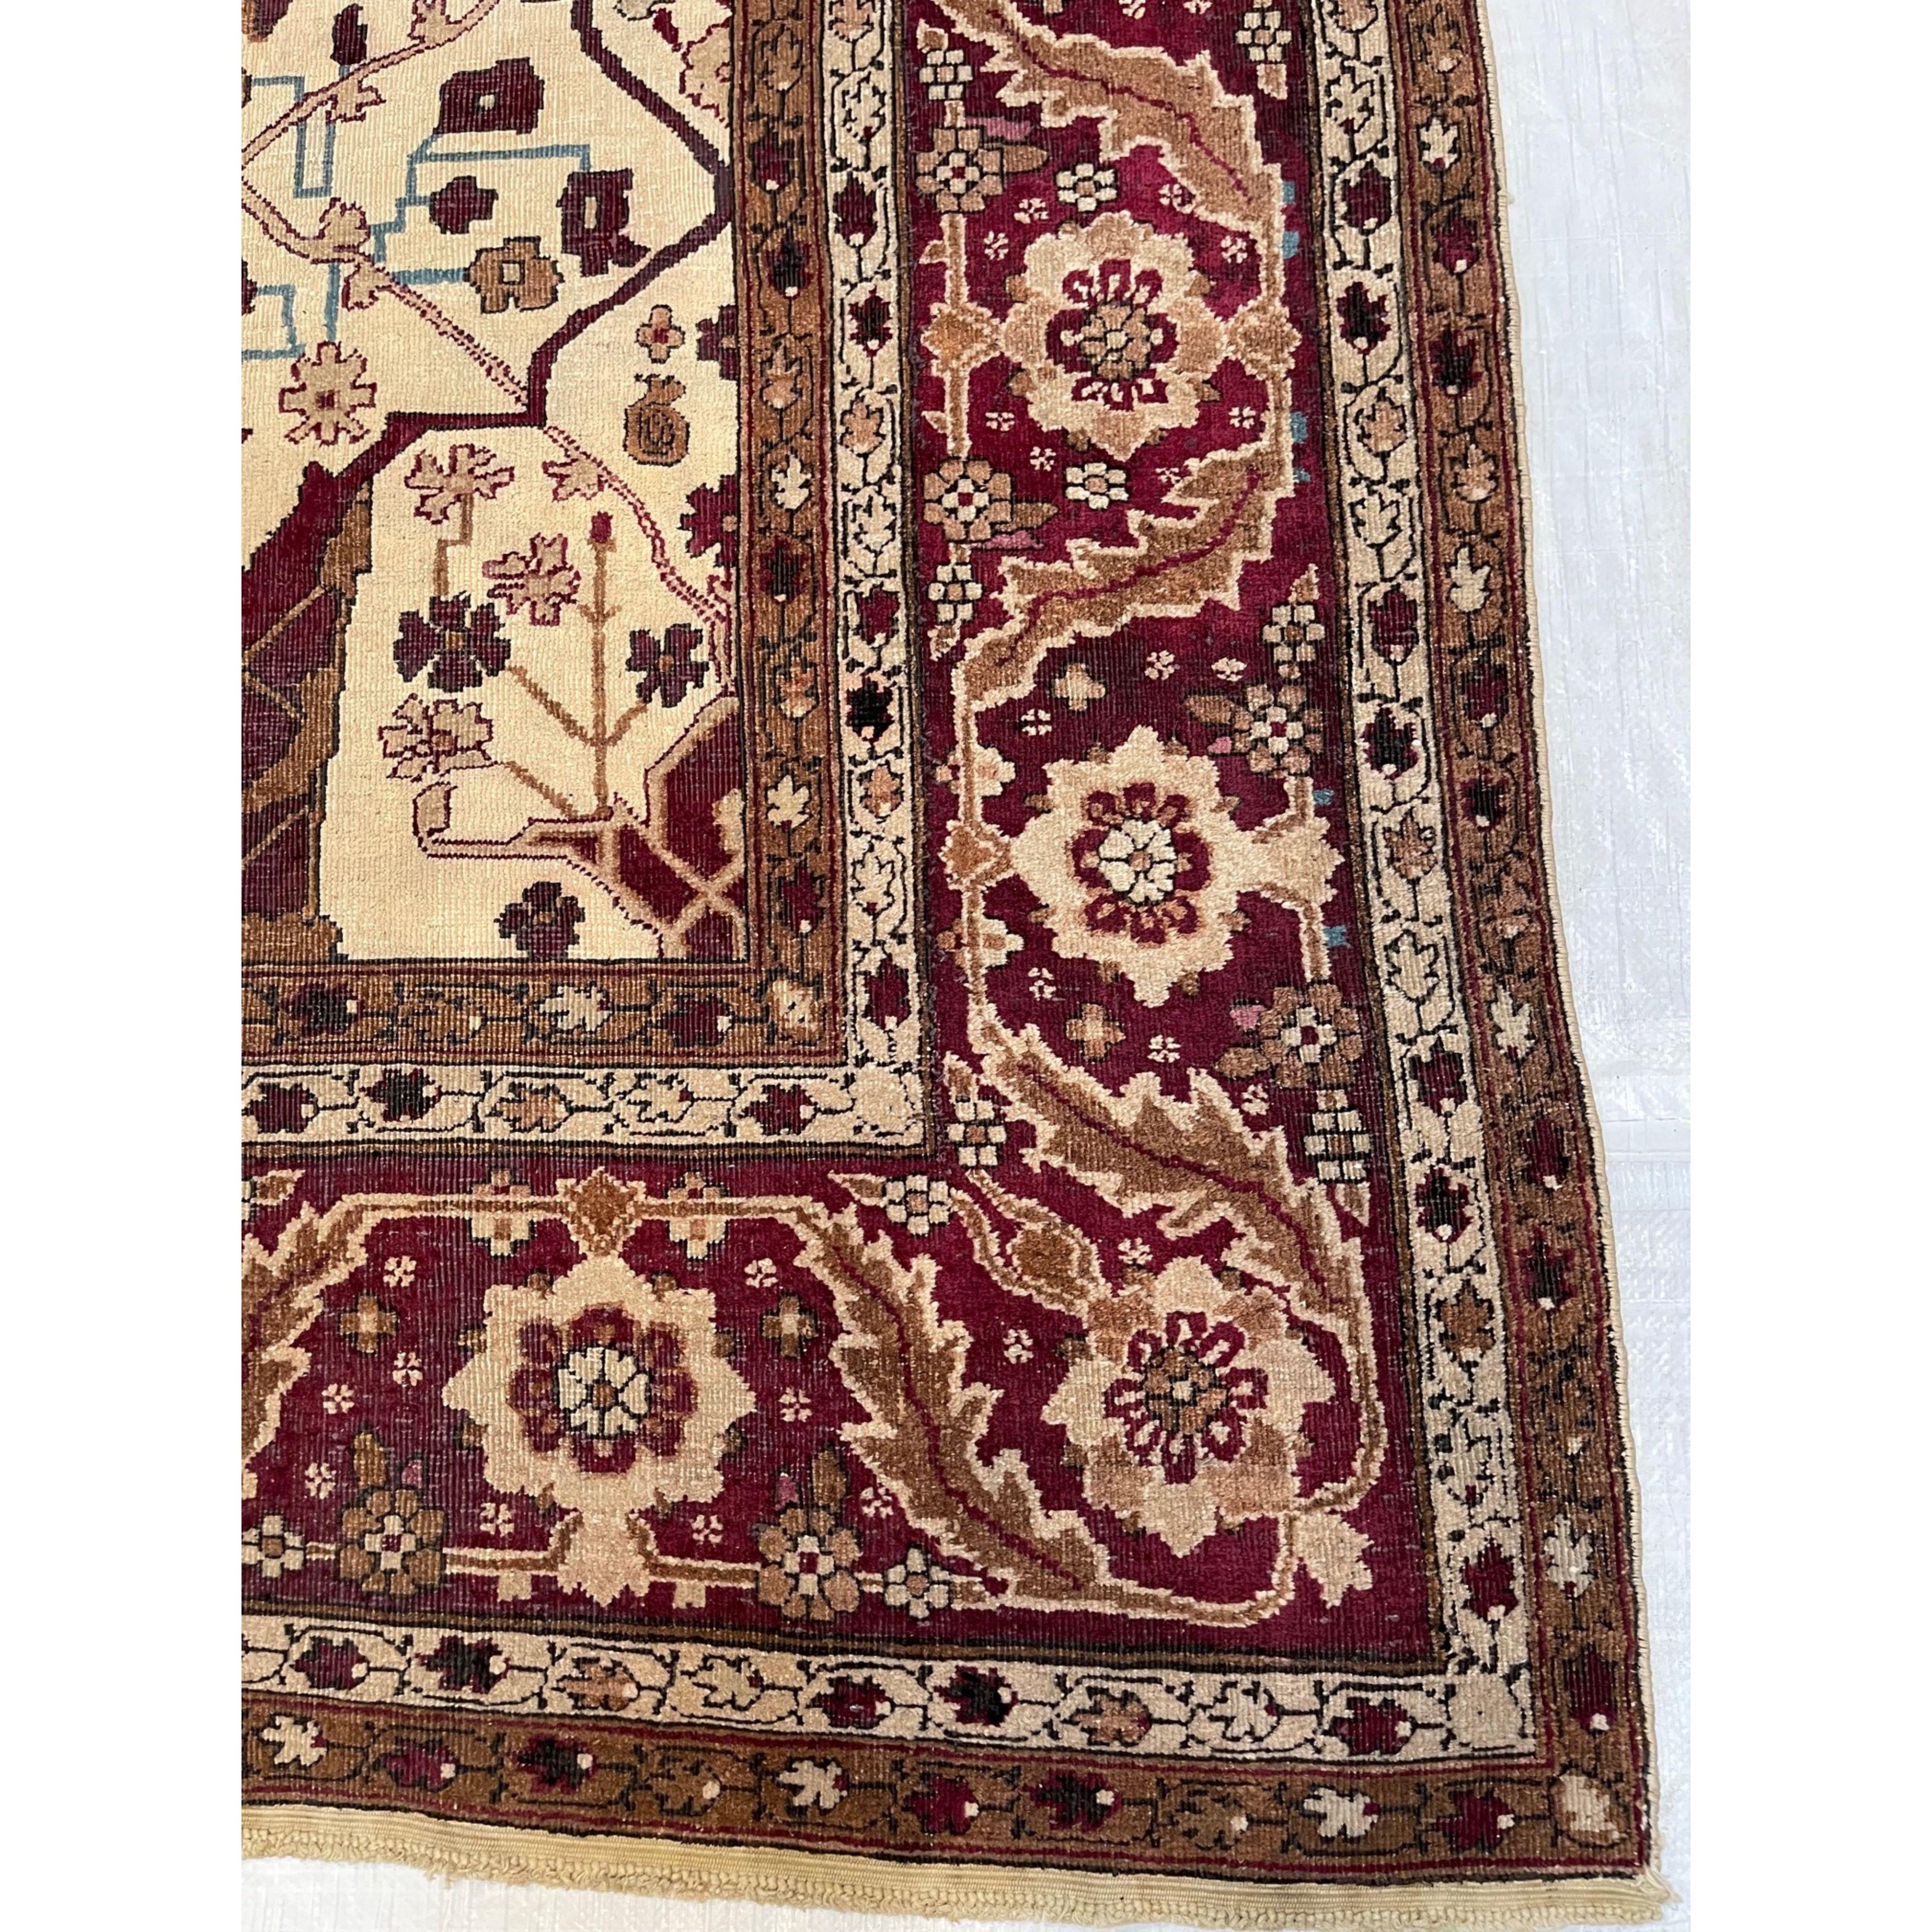 Antike Agra-Teppiche Agra ist seit der großen Zeit der Mogulkunst im 16. und 17. Jahrhundert ein wichtiges Zentrum der Teppichproduktion. Als die Teppichindustrie unter britischer Herrschaft im 19. Jahrhundert wiederbelebt wurde, lebte die große